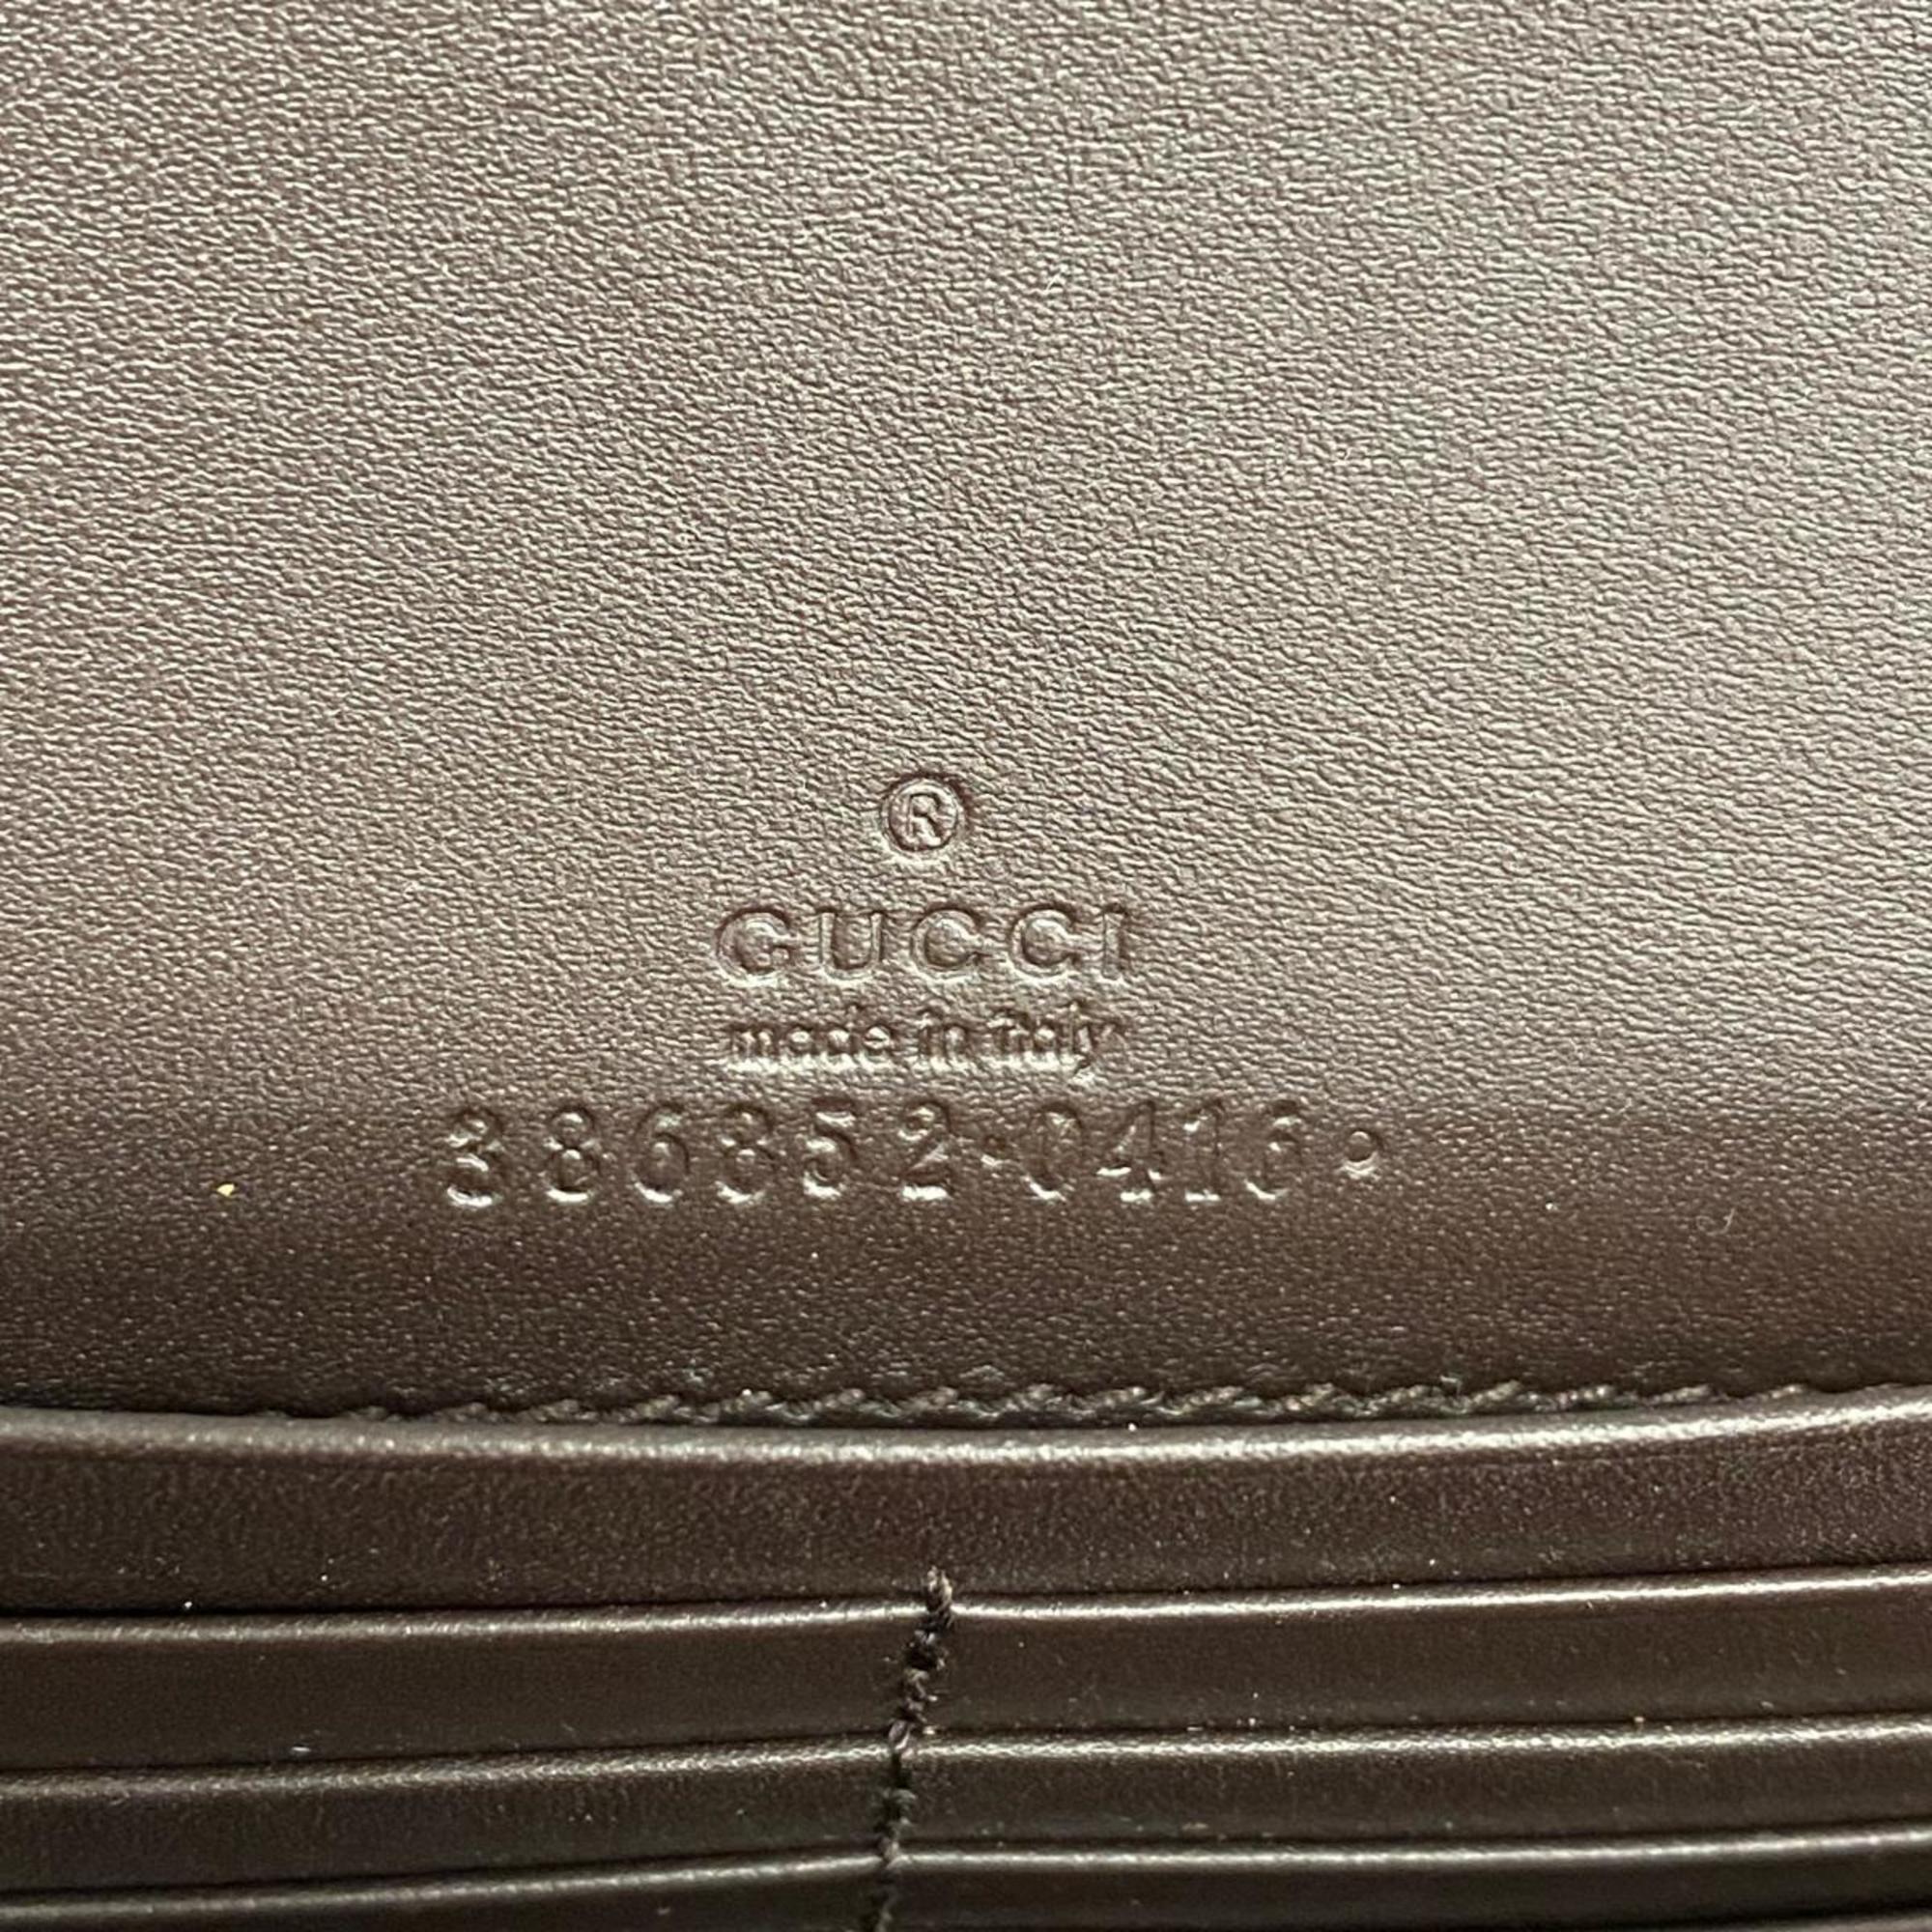 グッチ(Gucci) グッチ クラッチバッグ GGスプリーム 386852  レザー ブラウン シャンパン  メンズ